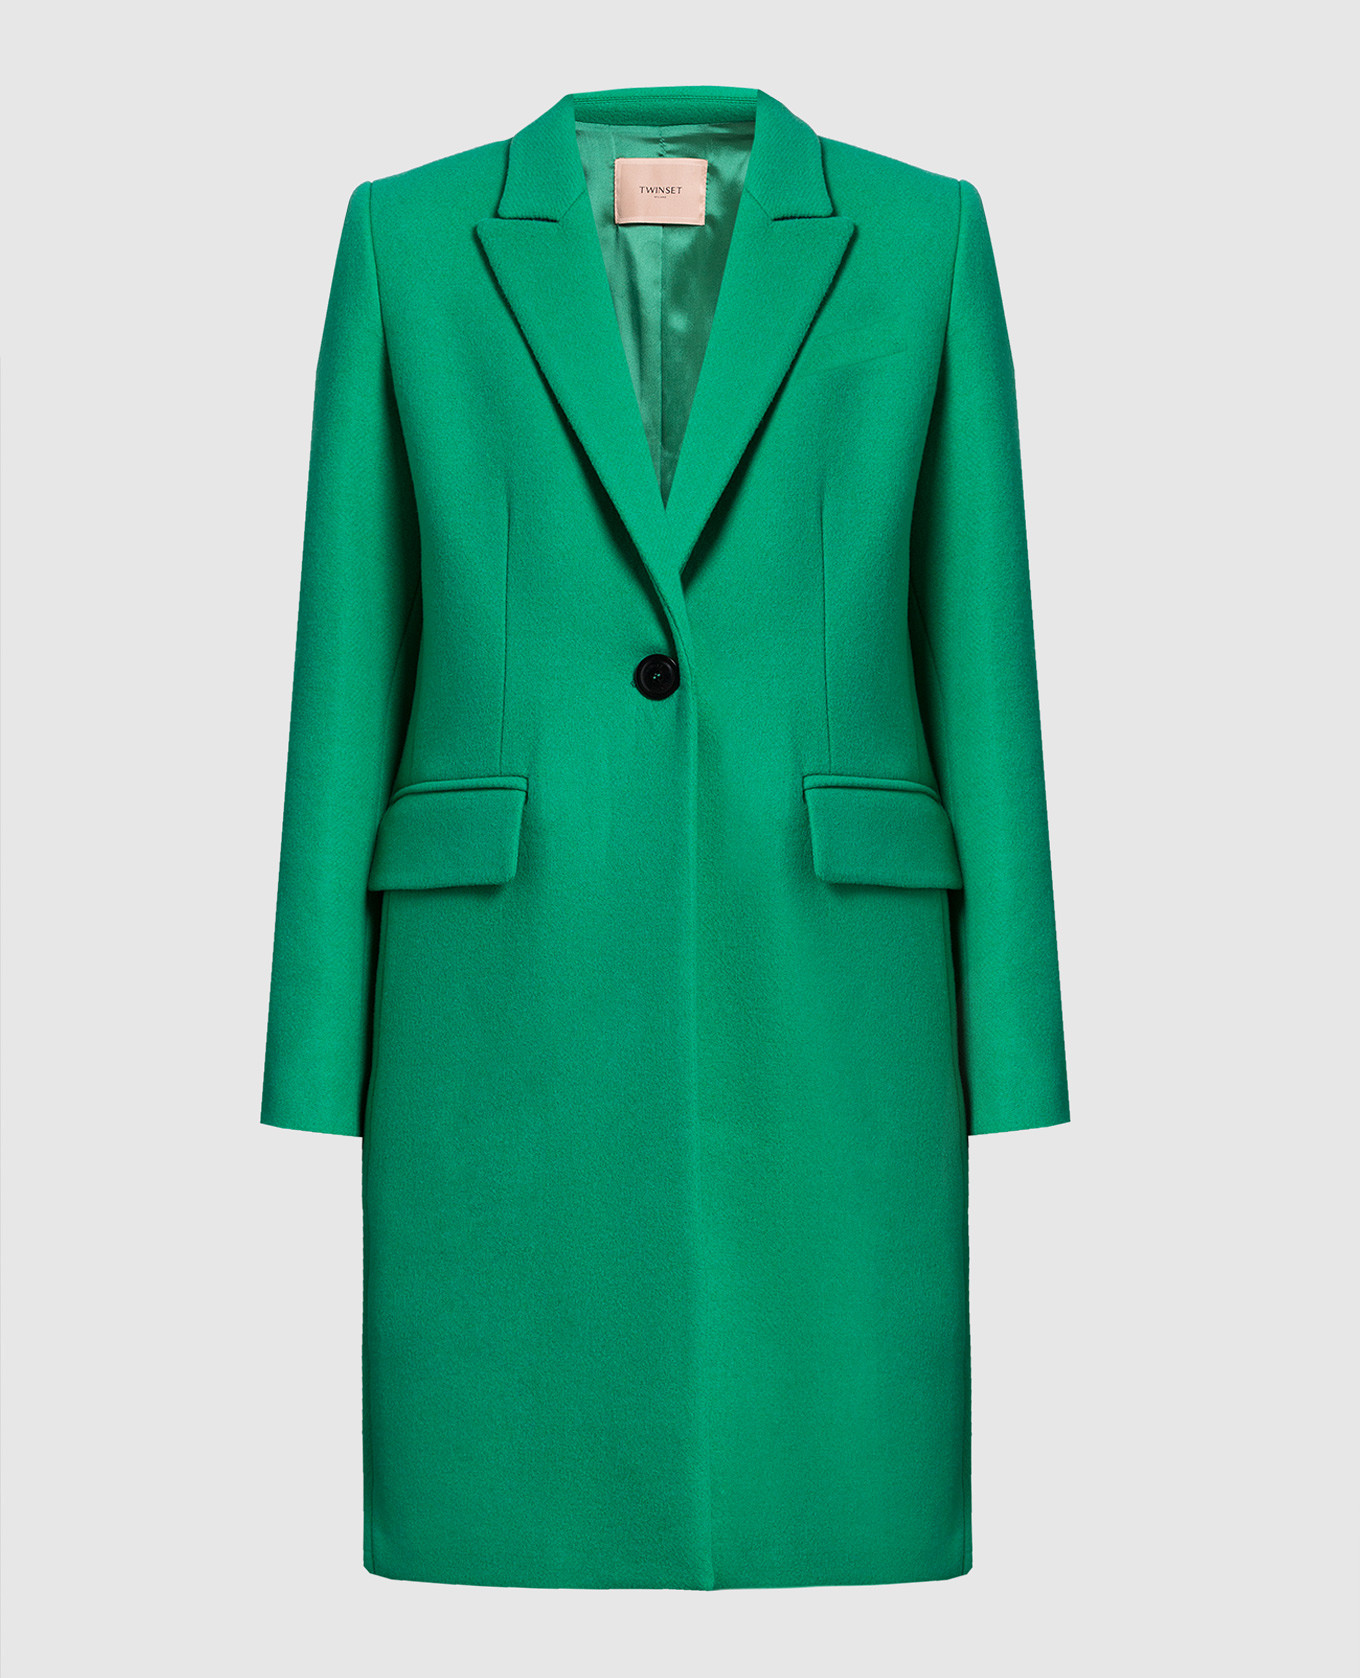 Зеленое пальто купить. Зеленое пальто. Красивое зеленое пальто. Салатовое пальто купить.